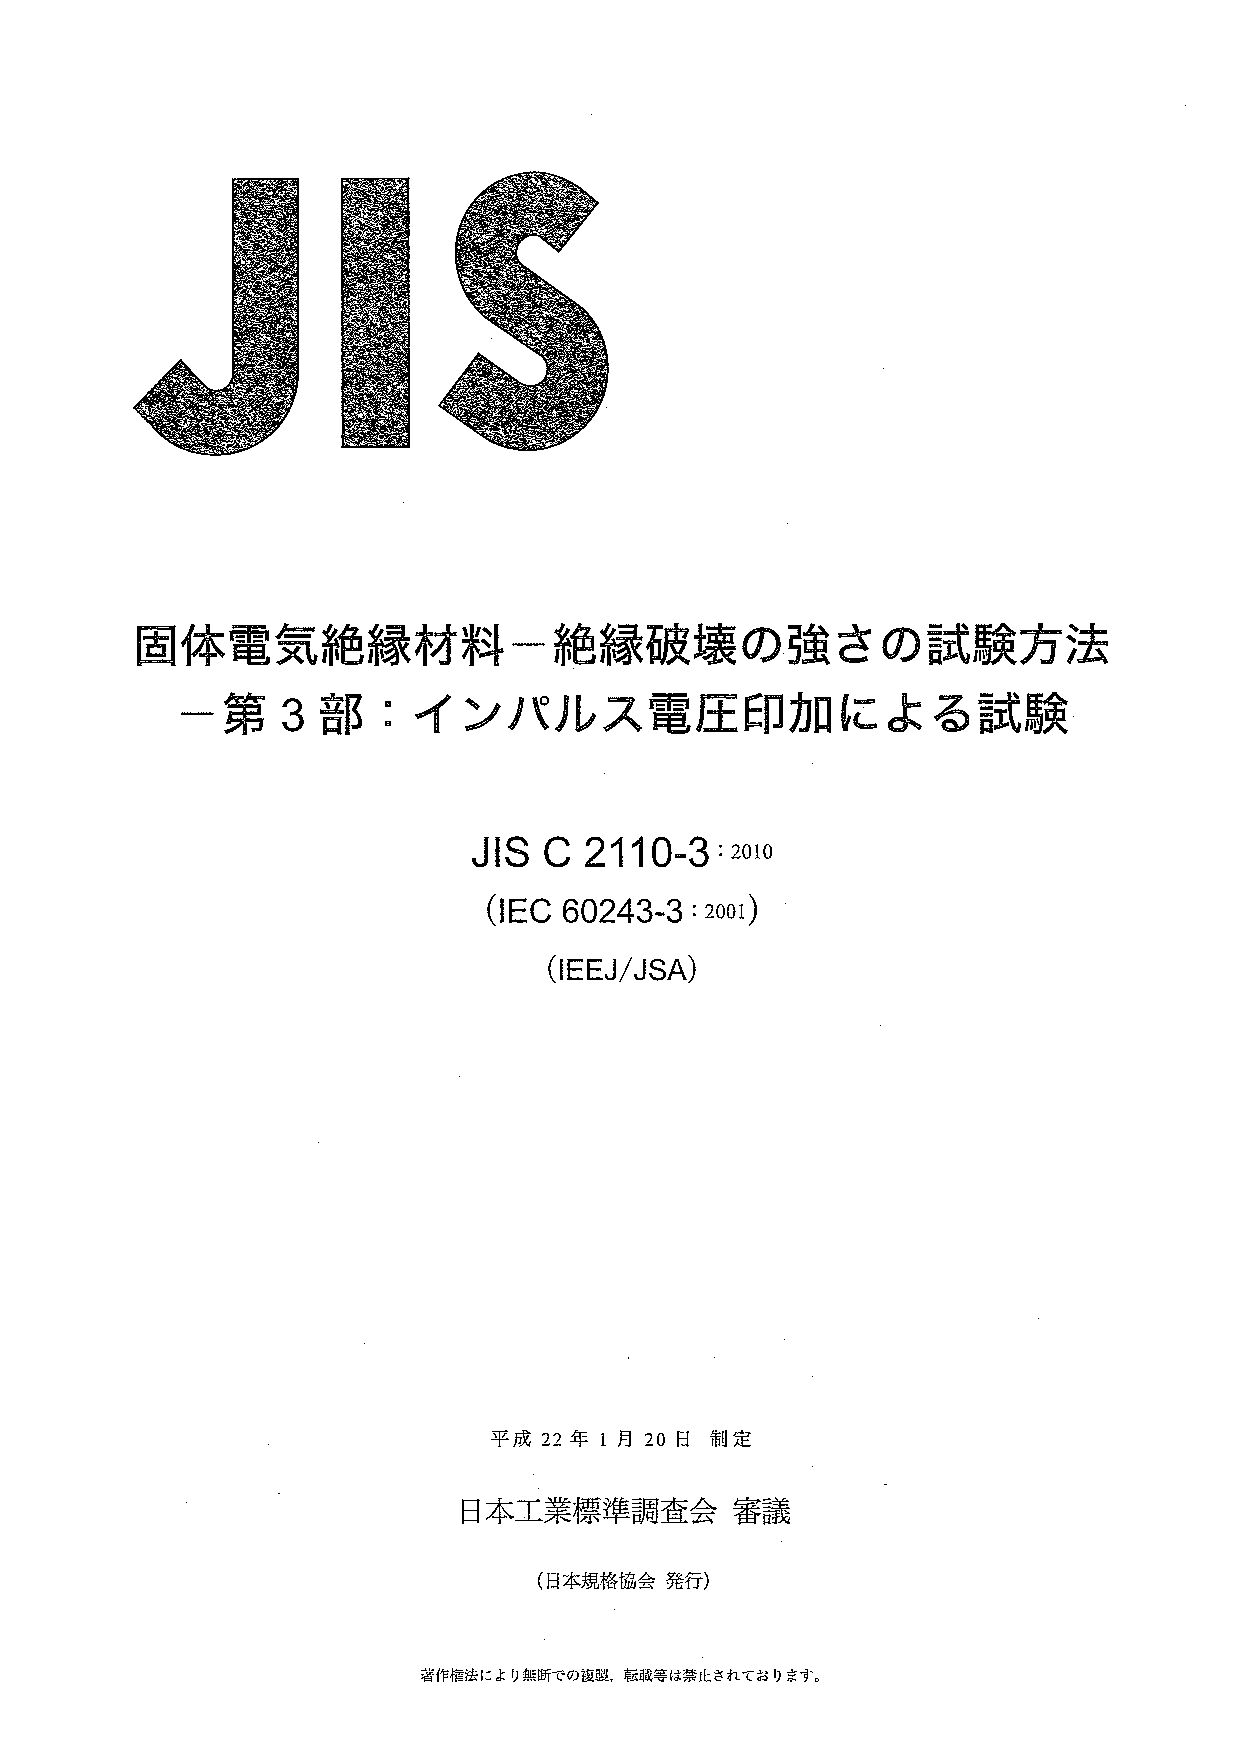 JIS C 2110-3:2010封面图